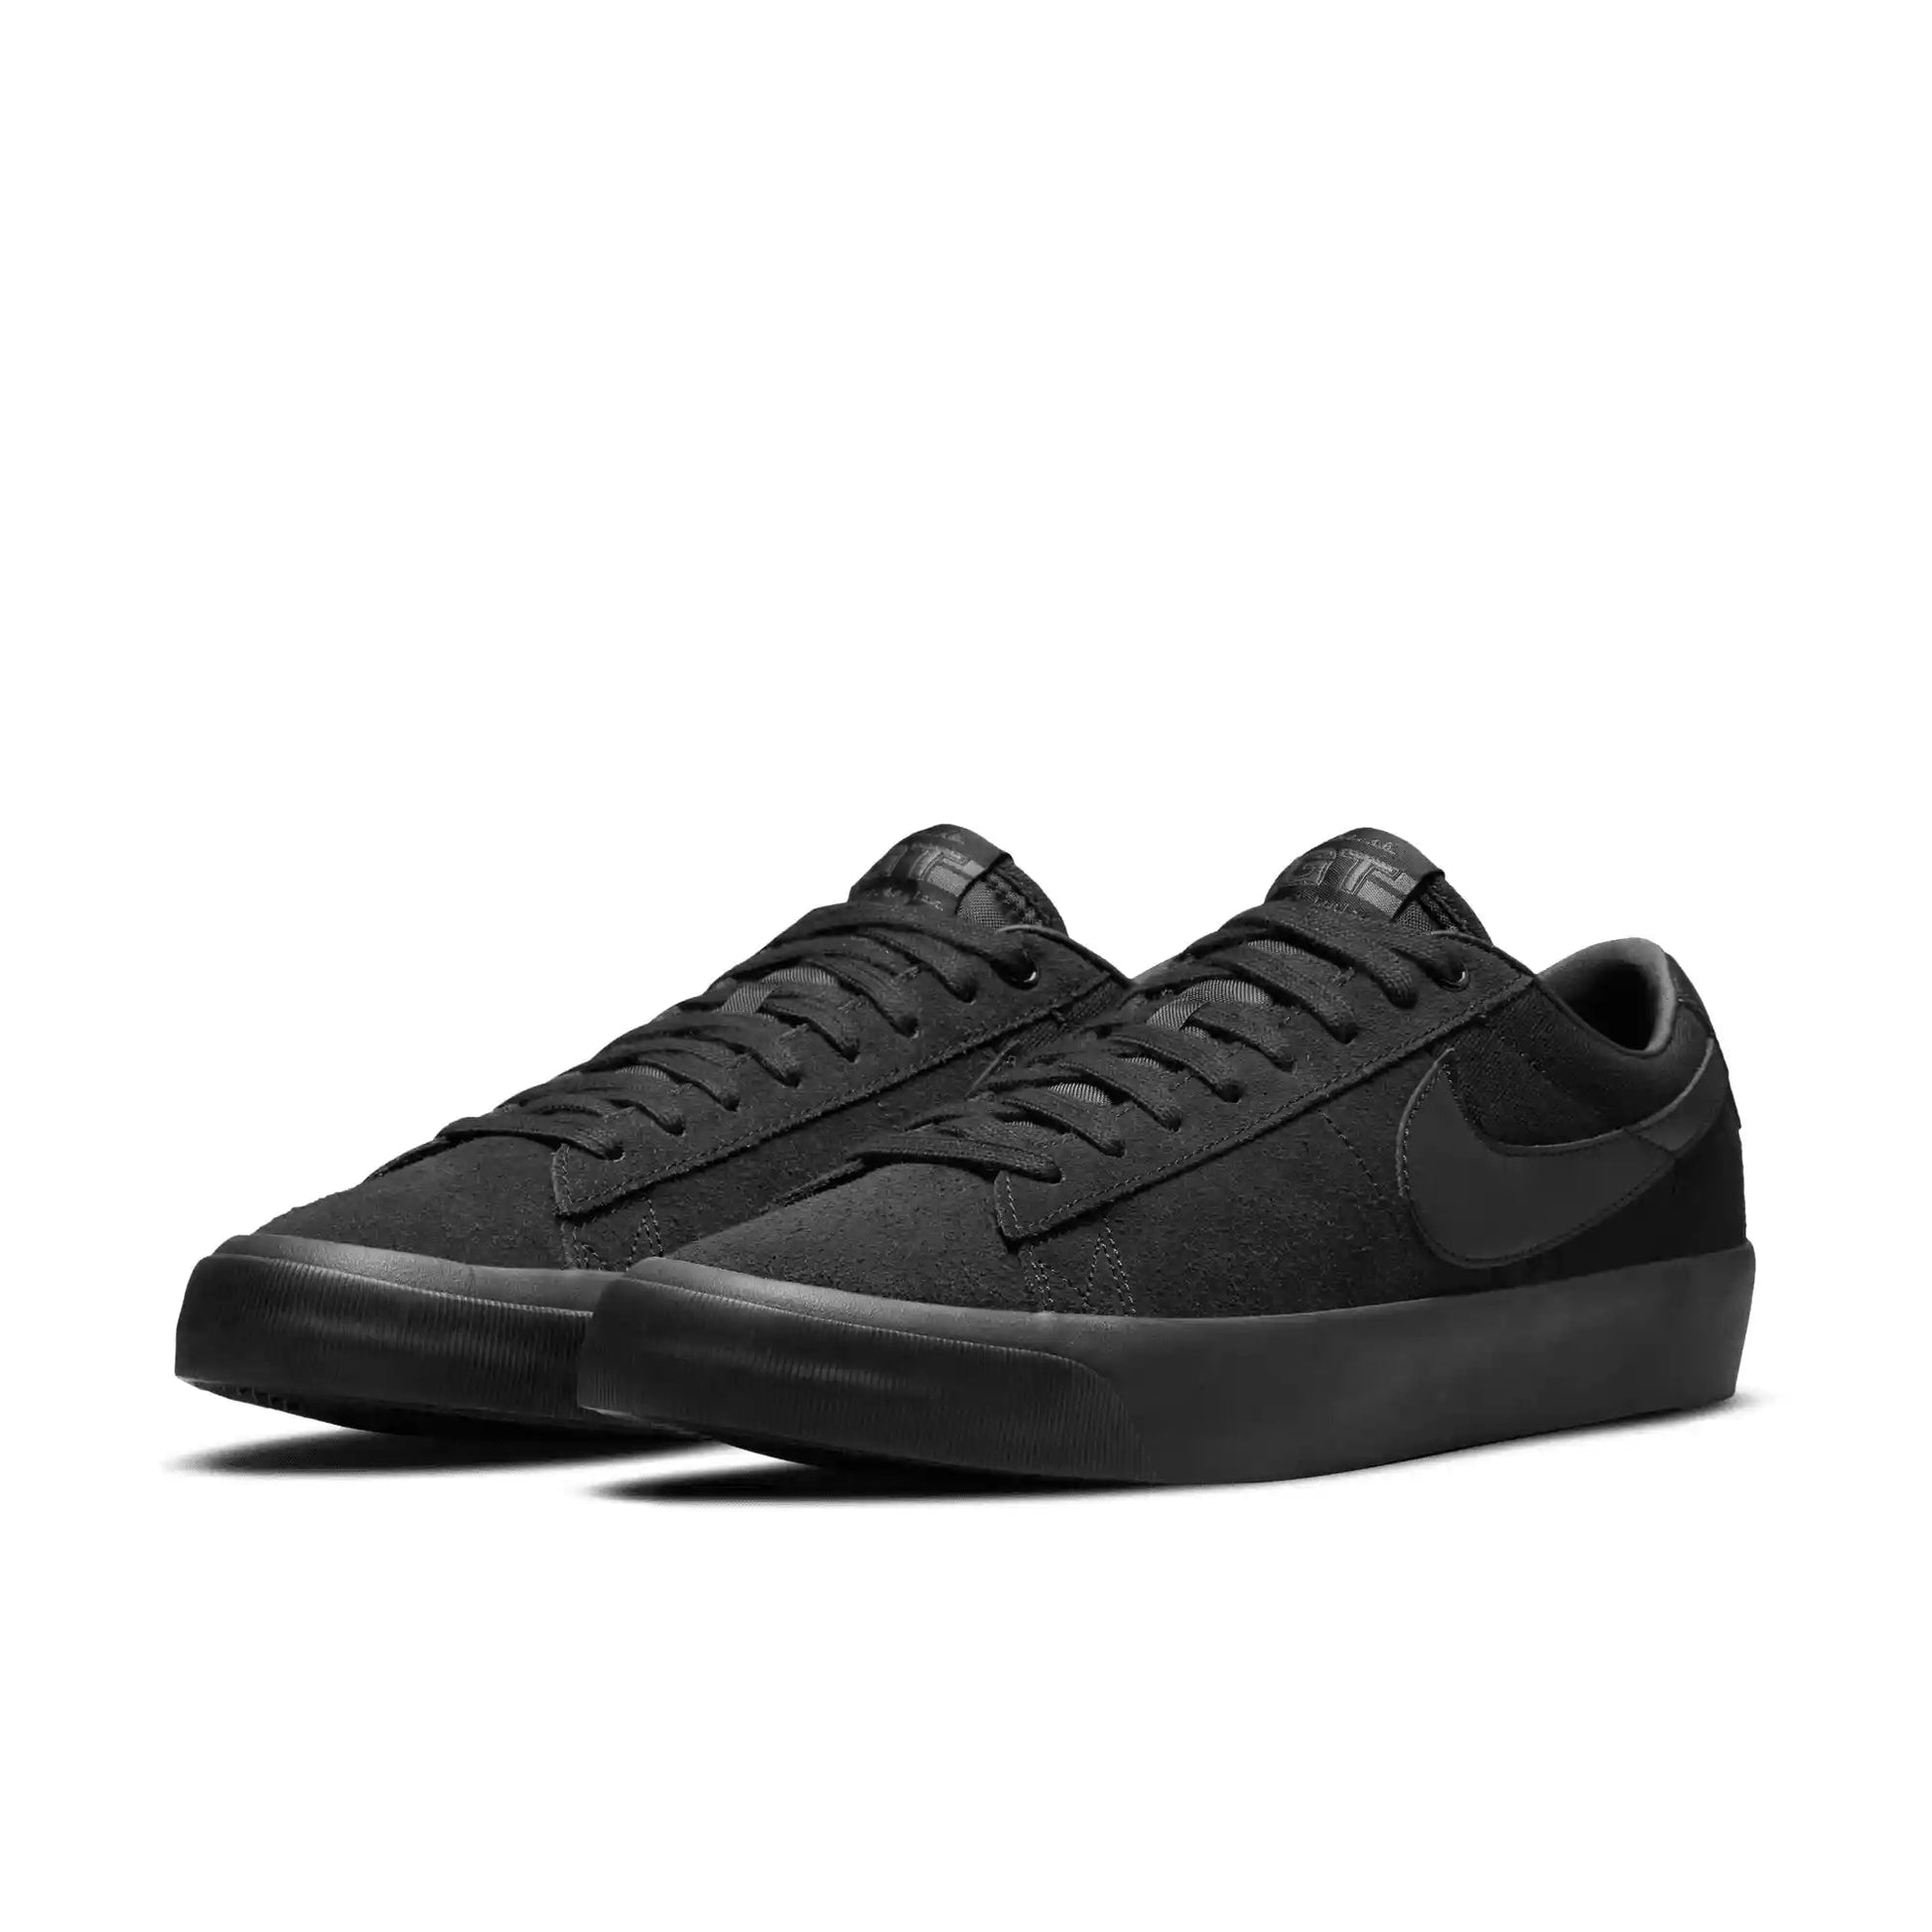 Nike SB Zoom Blazer Low Pro GT, black/black-black-anthracite - Tiki Room Skateboards - 2